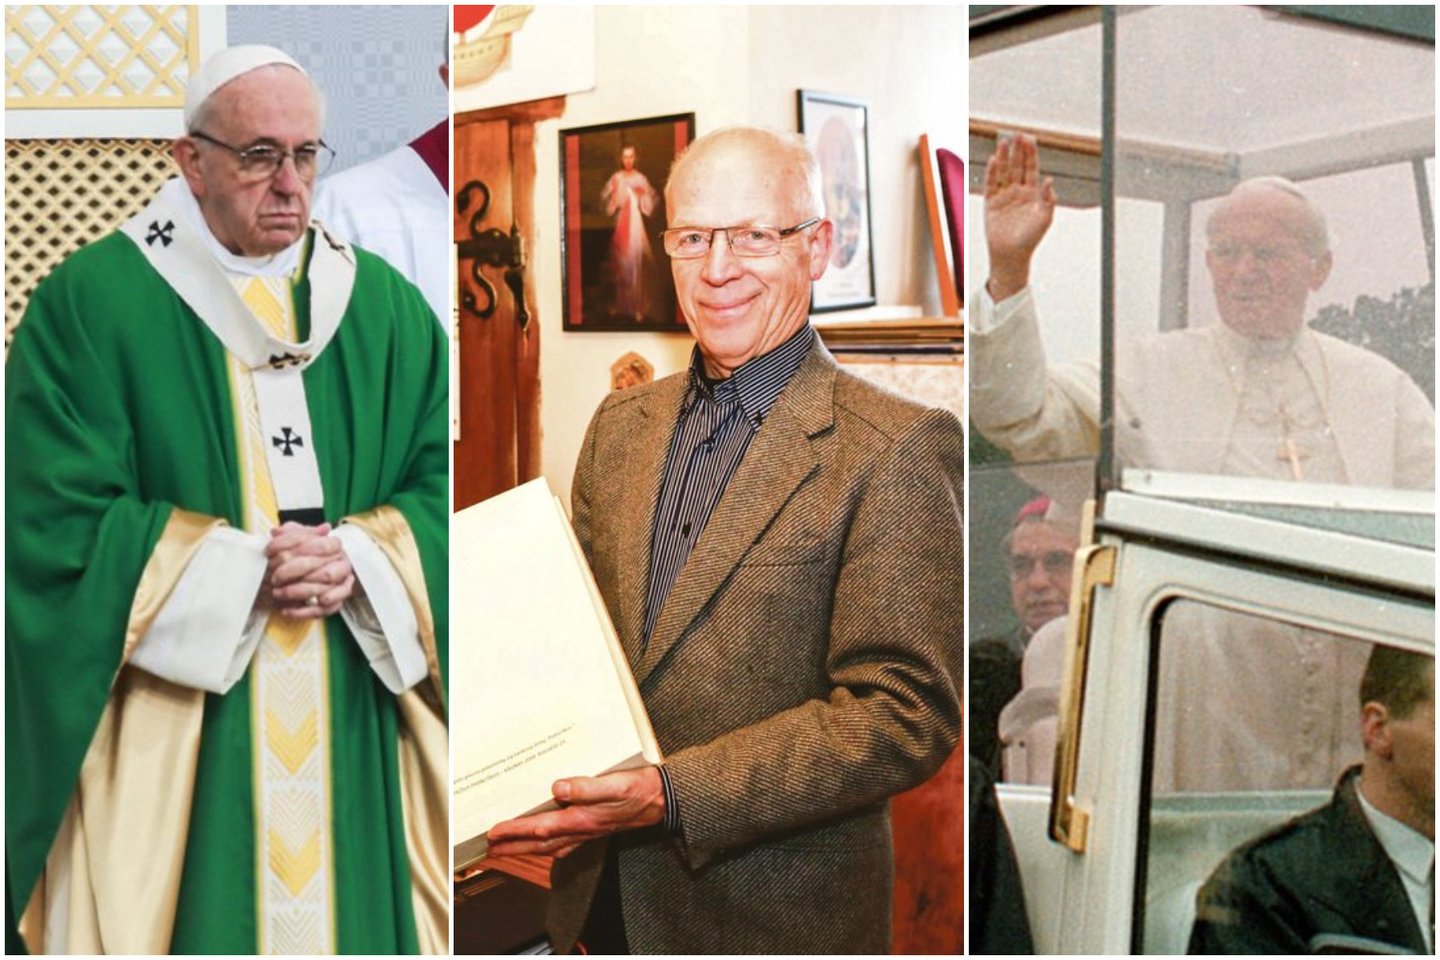 Kauno ceremonimeistras palygino dviejų popiežių vizitus: įspūdžiai skiriasi.